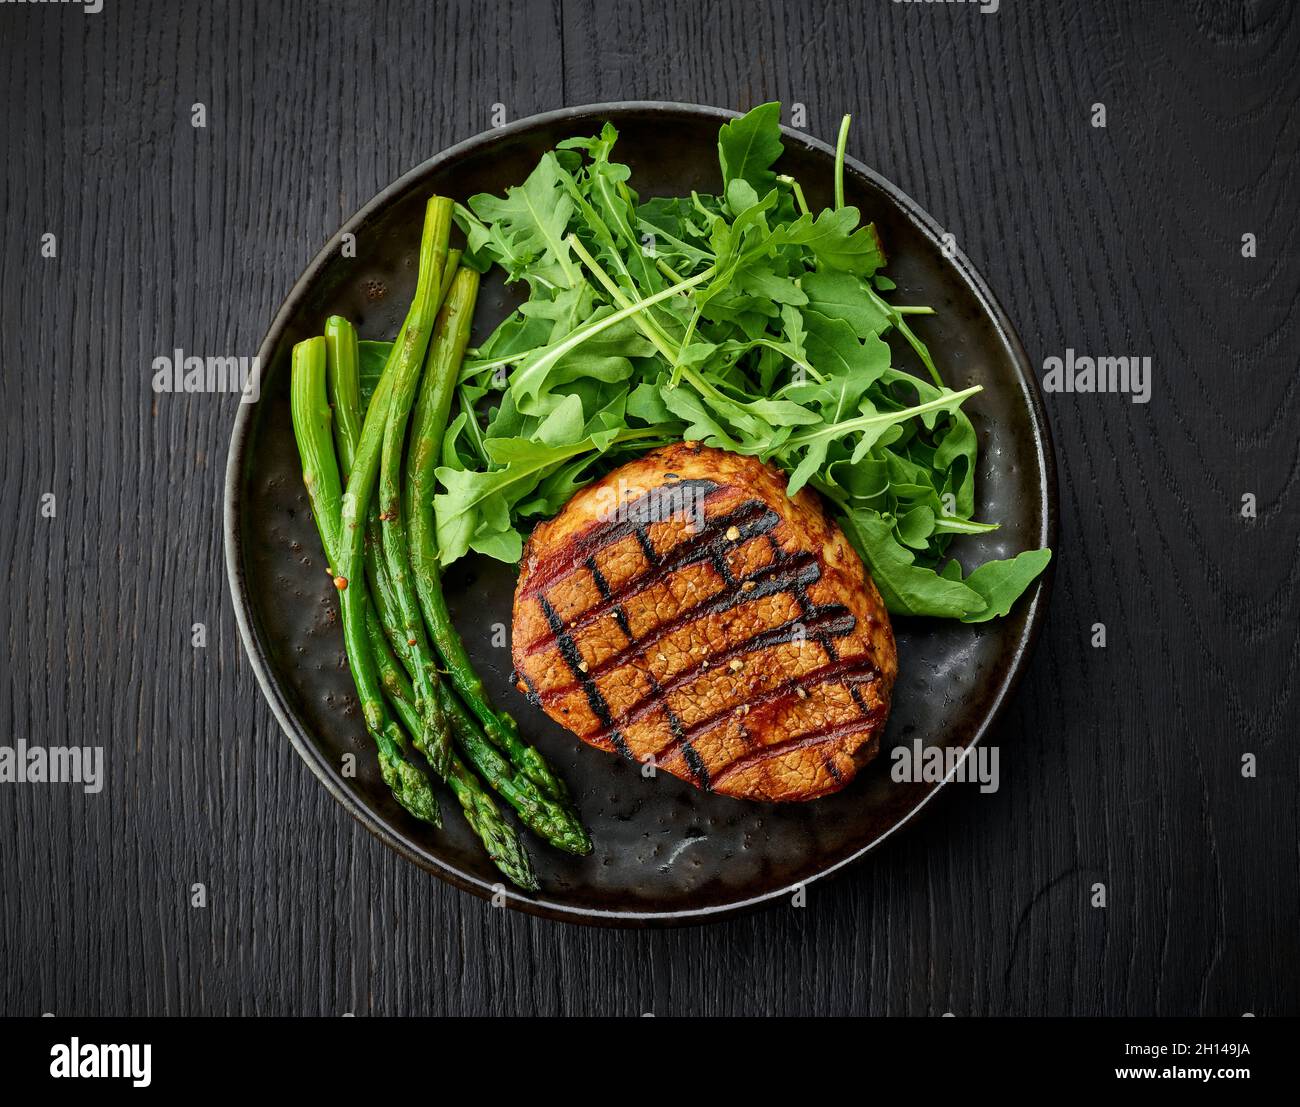 Steak de veau fraîchement cuit, asperges et arugula servis sur une assiette sombre, vue du dessus Banque D'Images